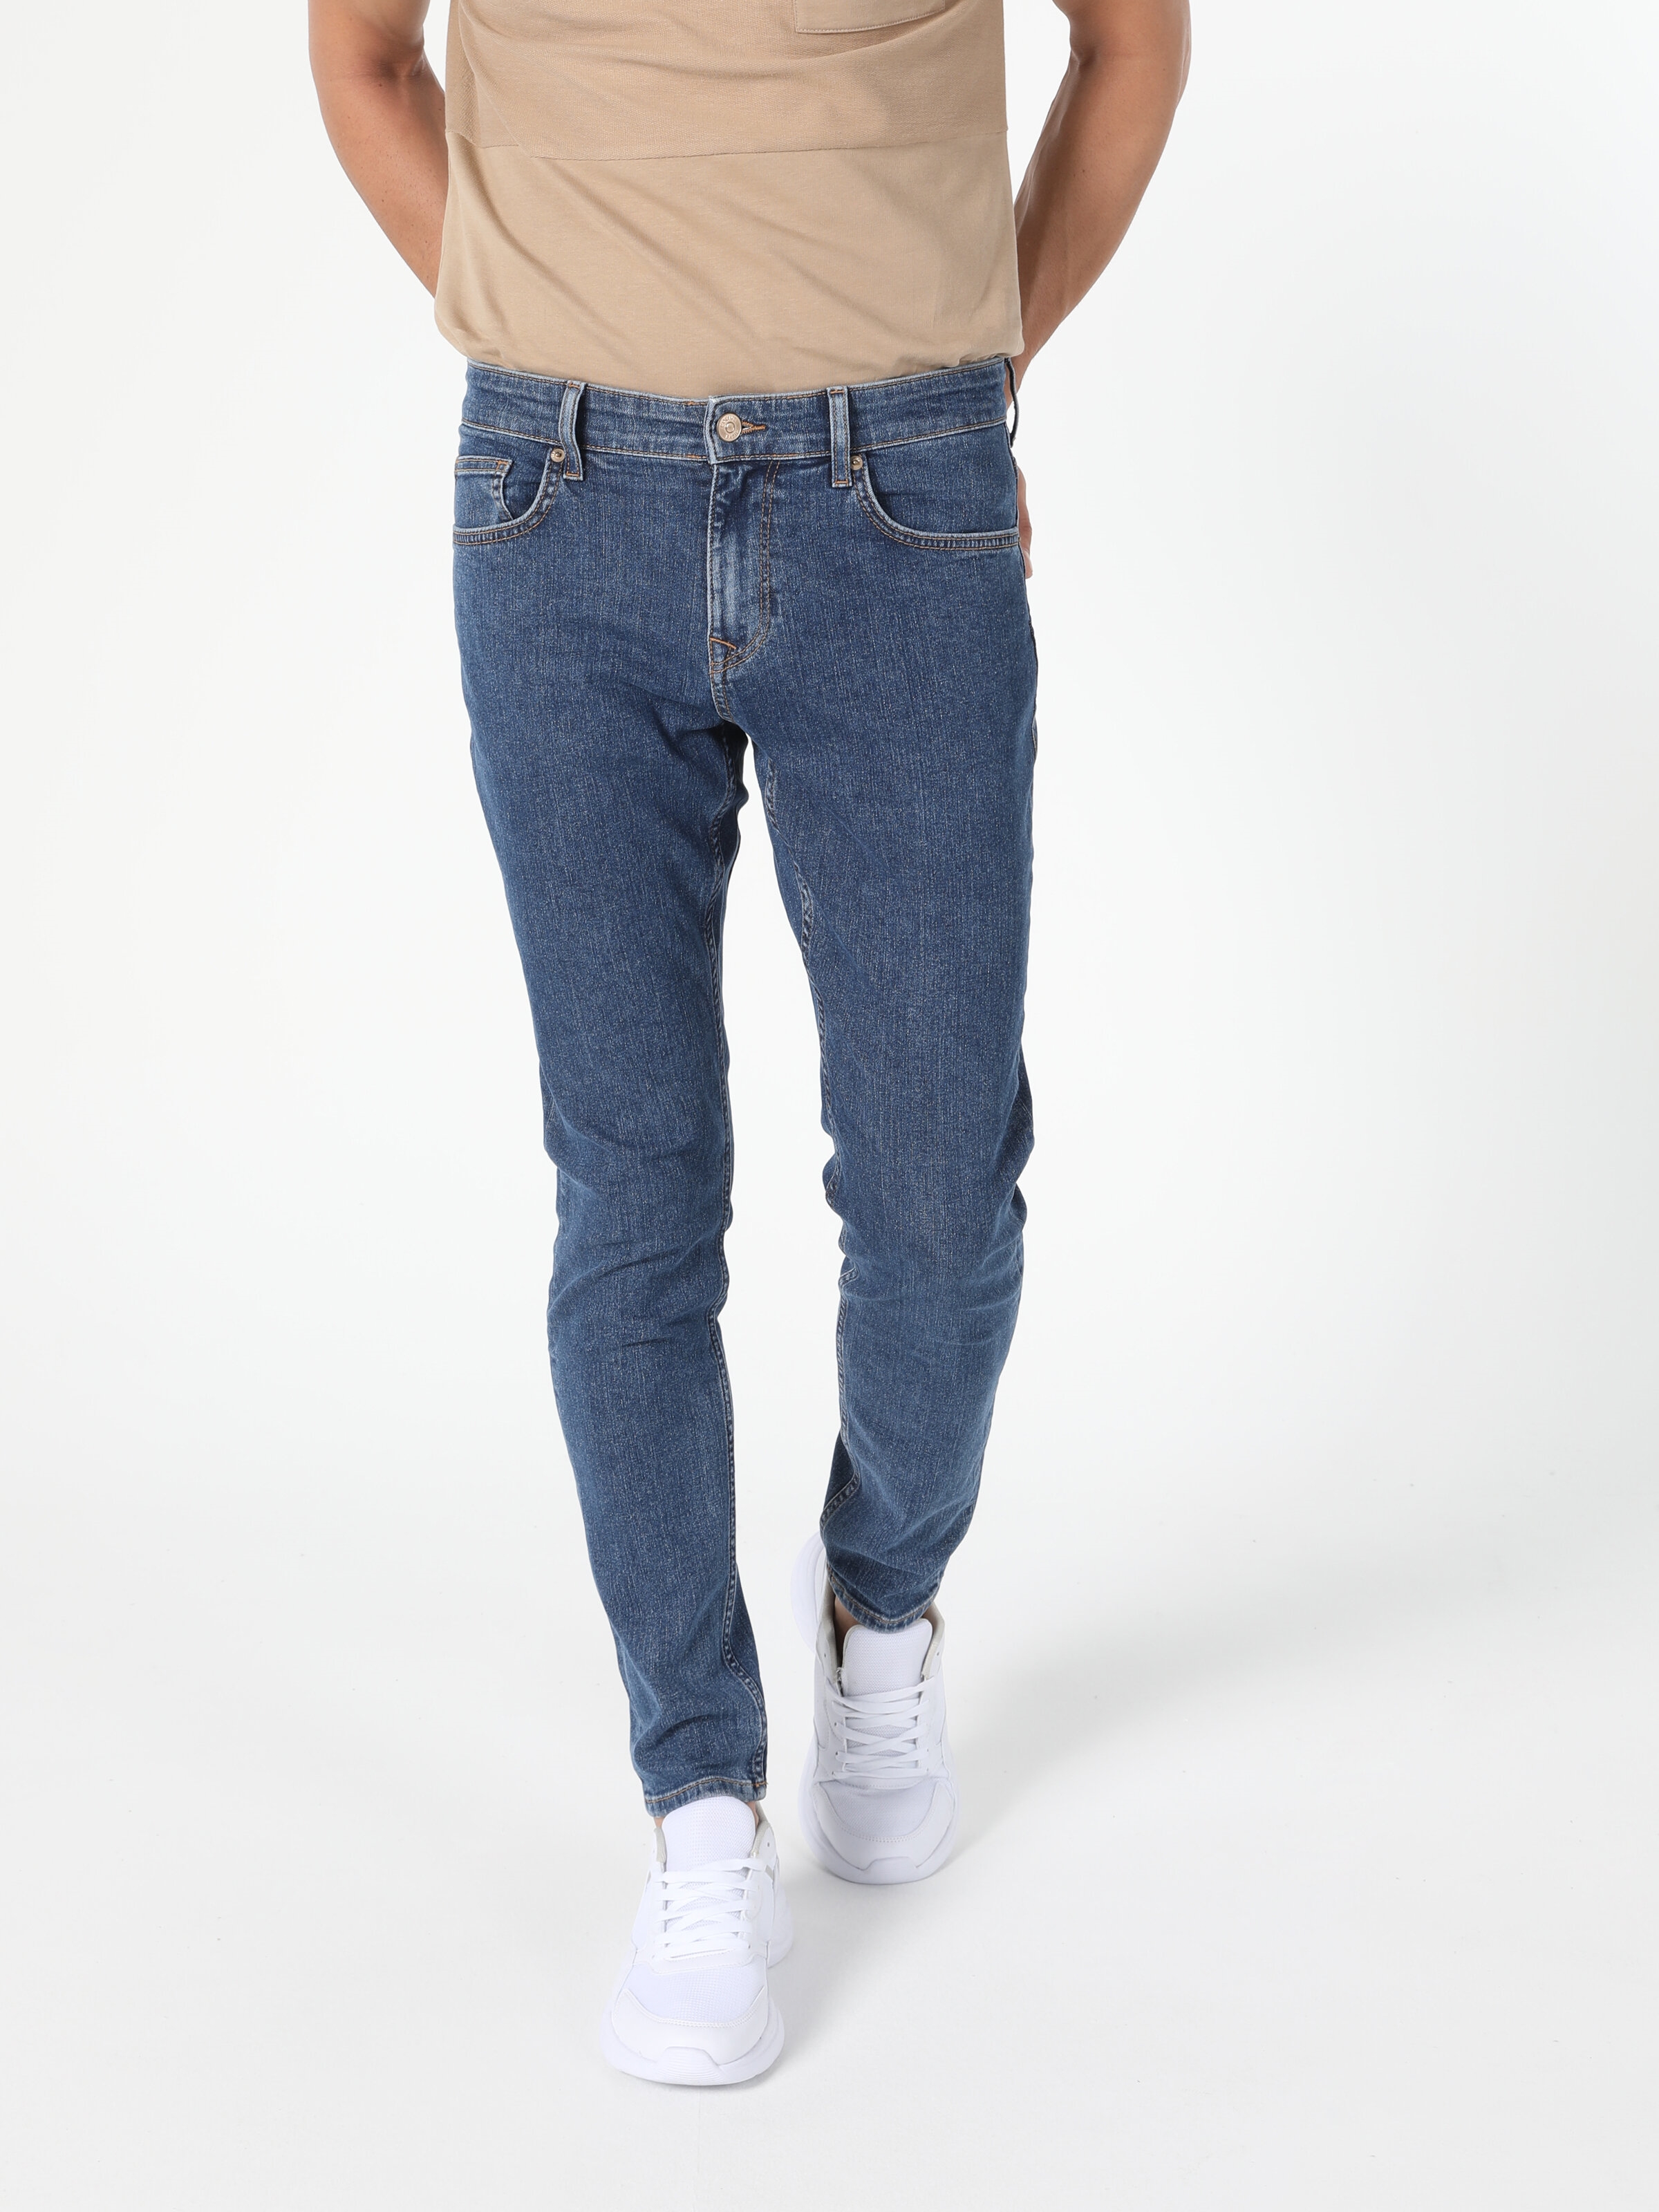 Afișați detalii pentru Pantaloni De Barbati Albastru Slim Fit 041 Danny